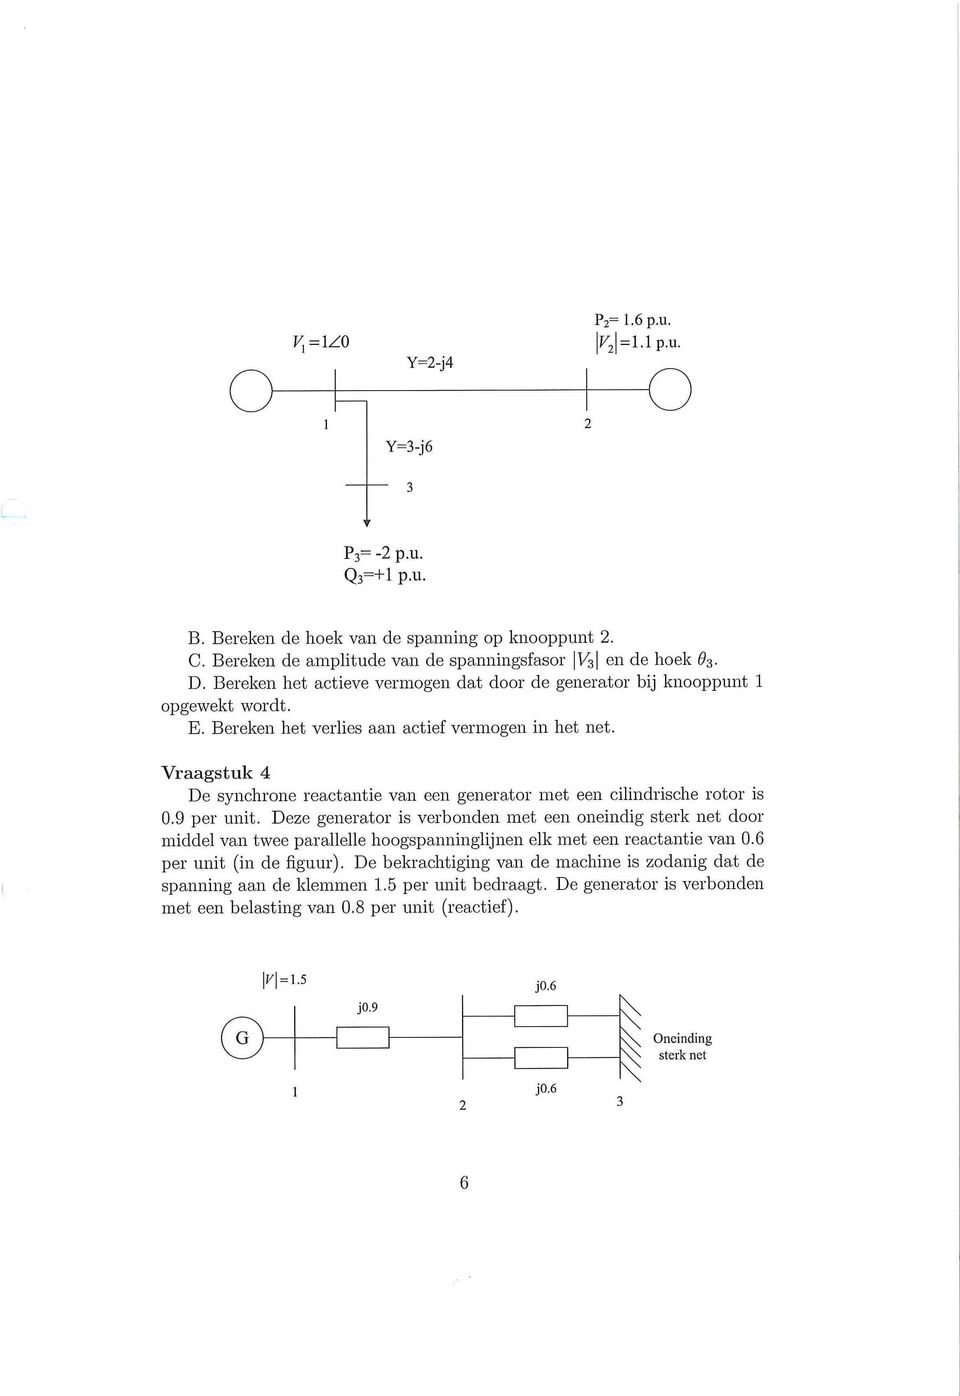 Vraagstuk 4 De synchrone reactantie van een generator met een cilindrische rotor is 0.9 per unit.